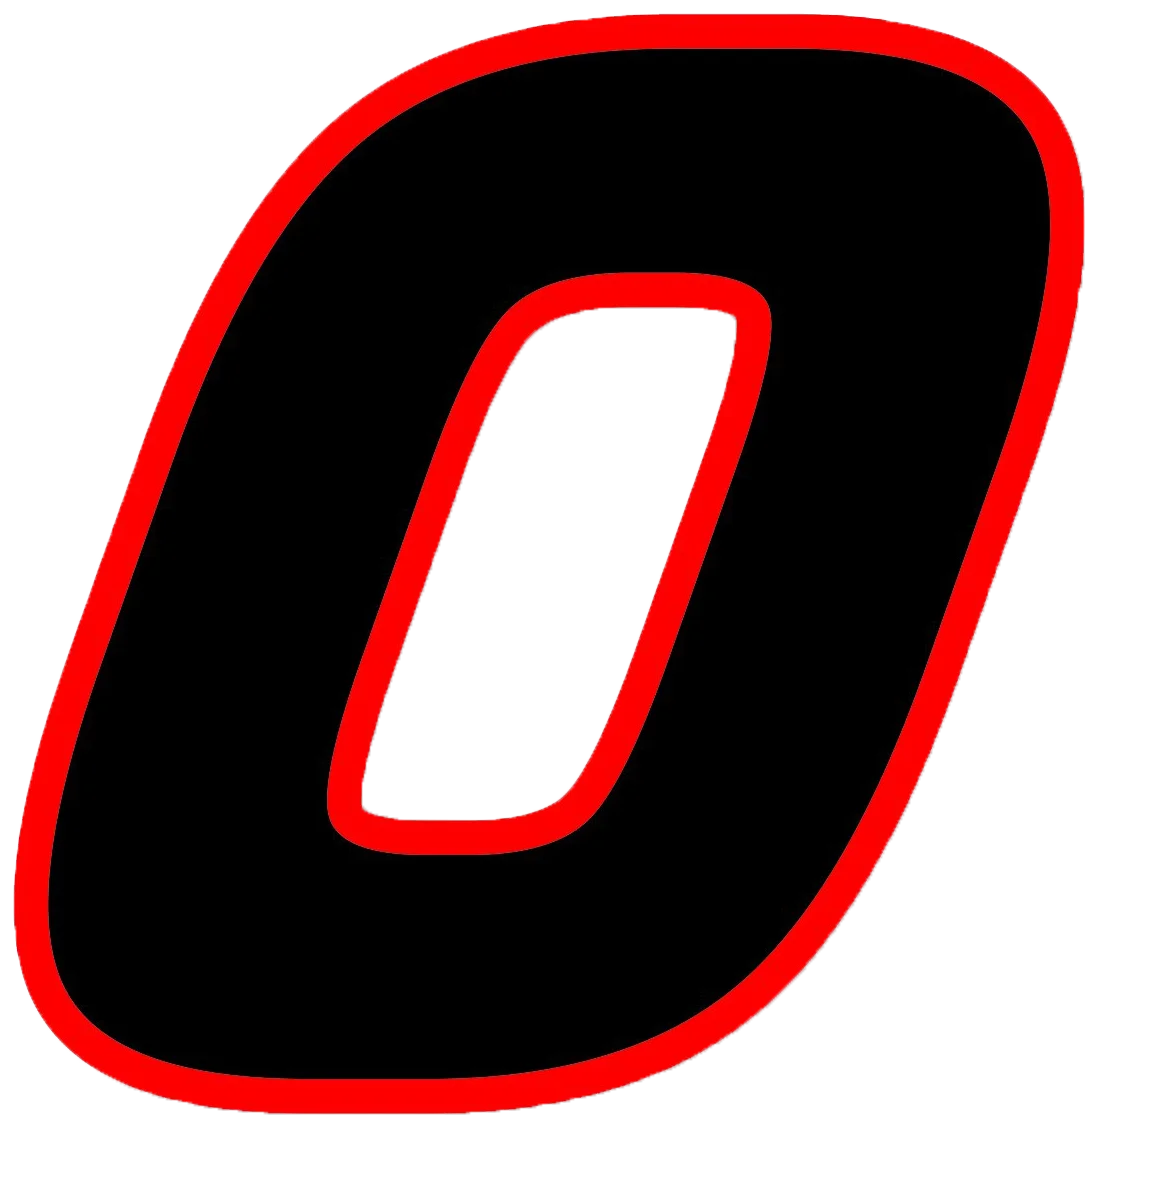 Три крыла FTC-717# виниловая наклейка черная(красный контур) quare шрифт гоночный номер Наклейка для автомобиля двигатель велосипед - Название цвета: FTC-717 colorful 0